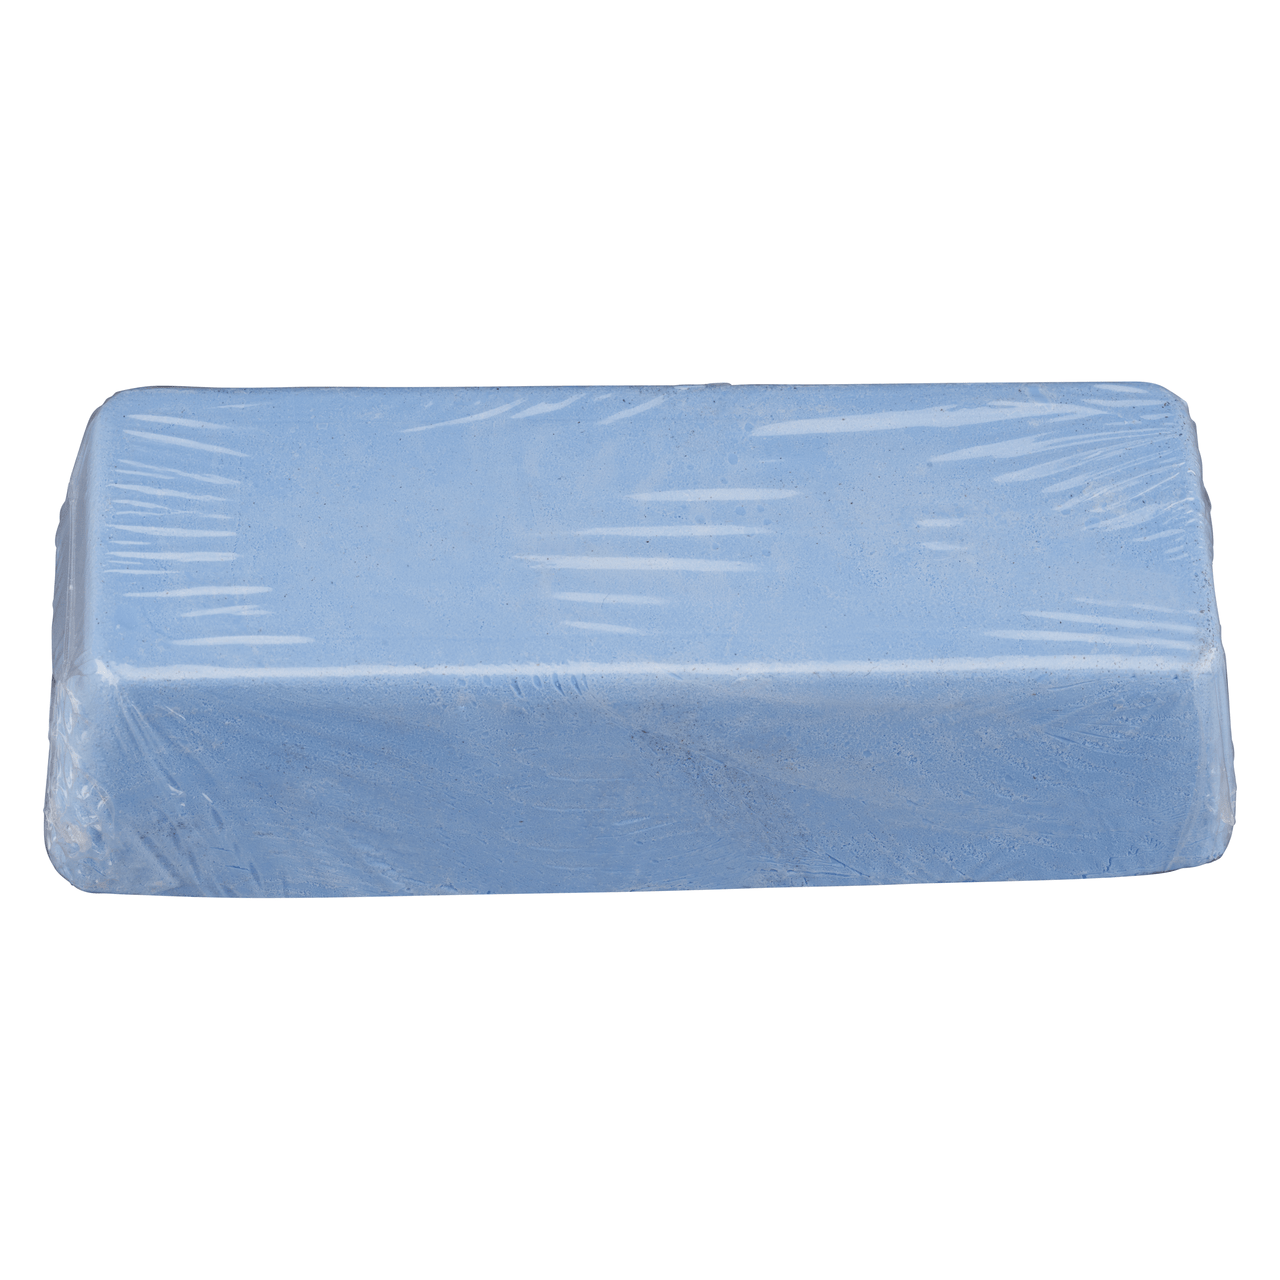 1 x RHODIUS Hochglanzpolieren Polierpaste blau für Metall PASTY | 353067